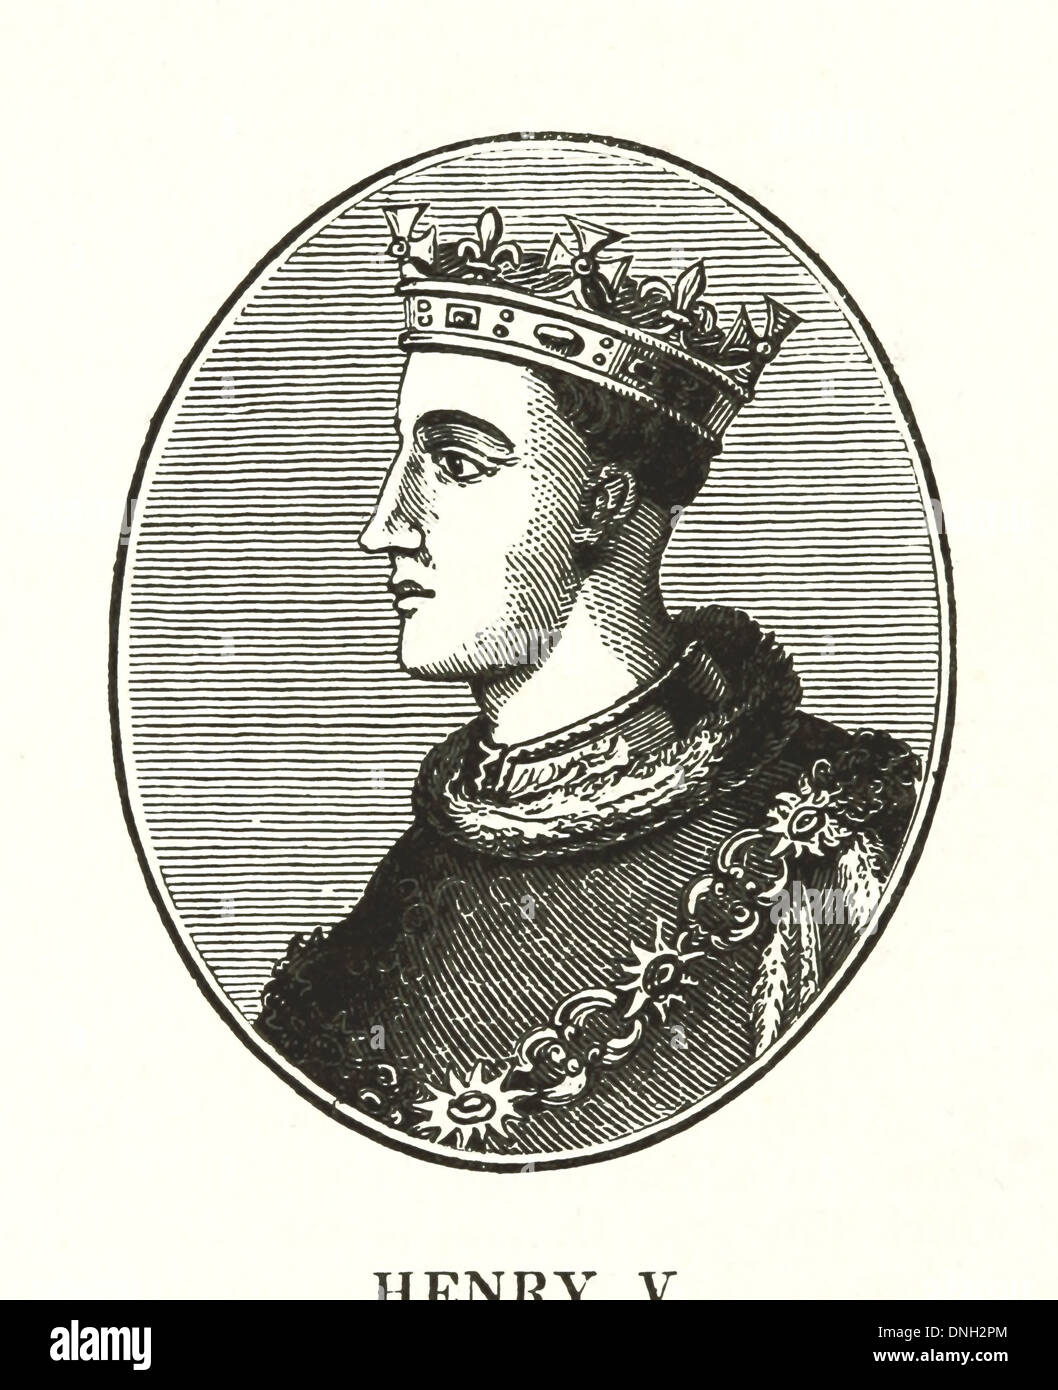 Enrico V (16 settembre 1386 - 31 agosto 1422) - Re d'Inghilterra dal 1413 fino alla sua morte Foto Stock